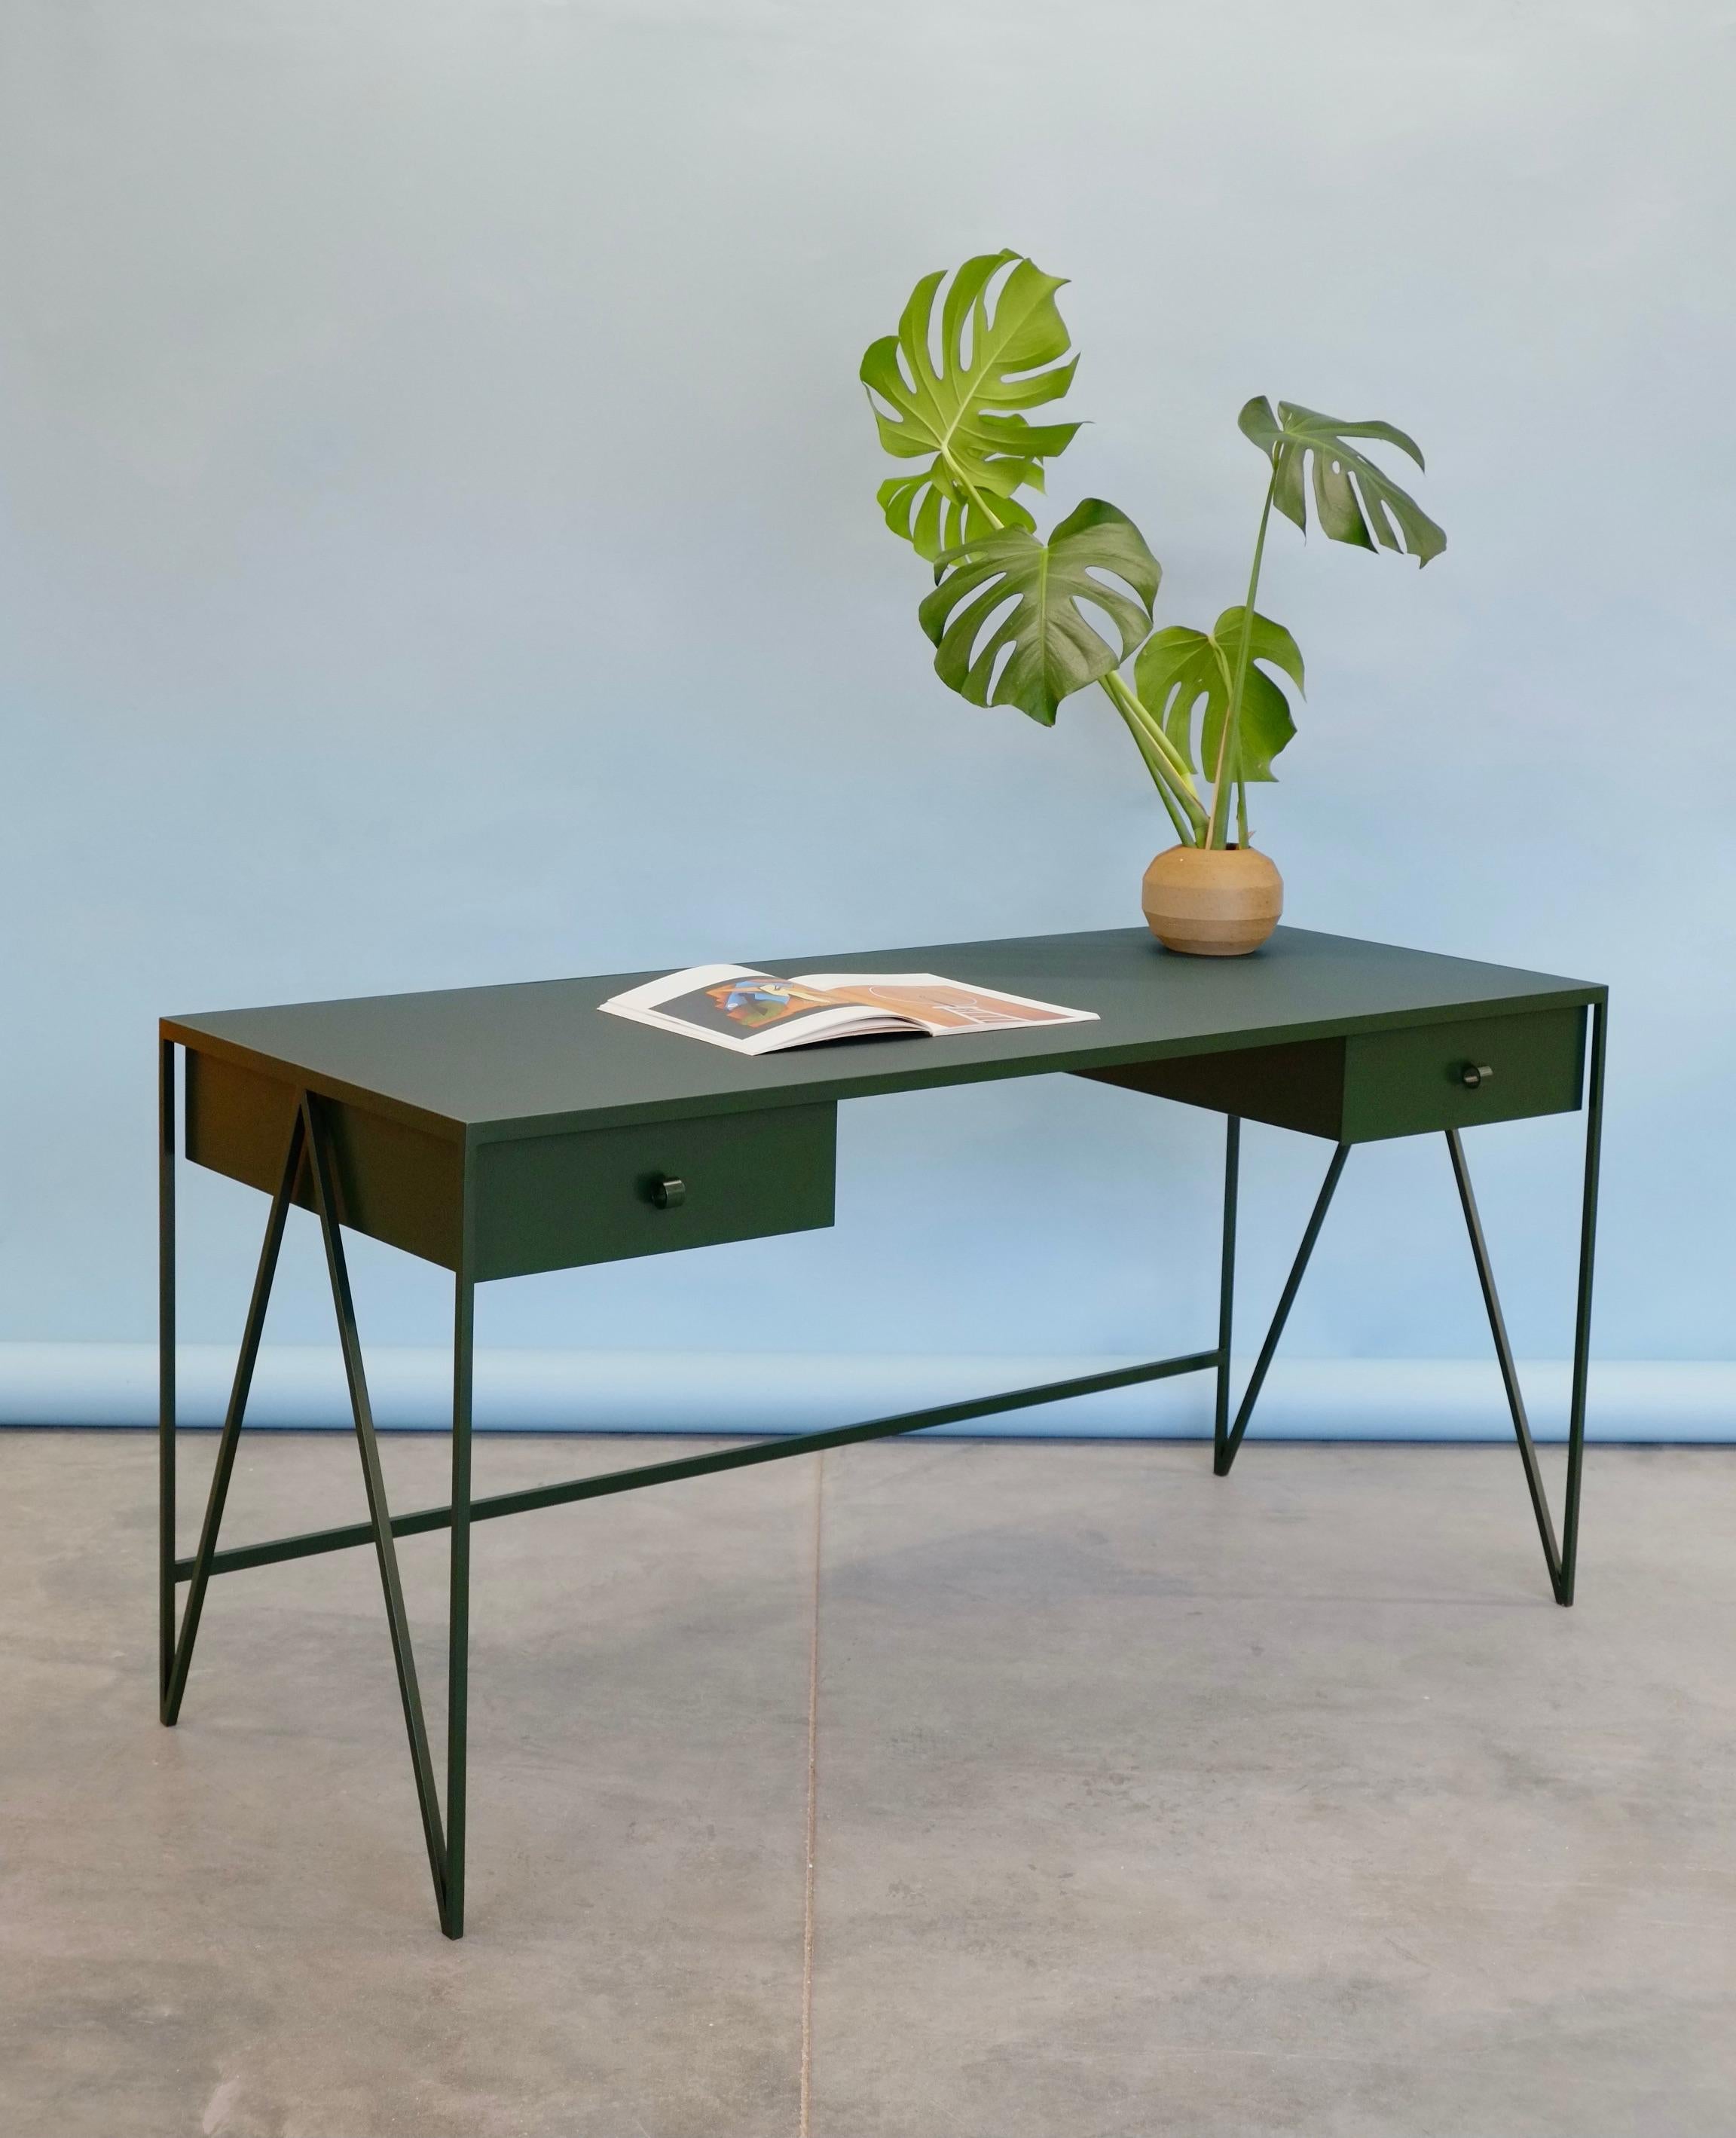 Dieser große, dunkelgrüne Schreibtisch besteht aus einem pulverbeschichteten Stahlrahmen und einer schönen, natürlichen Linoleumplatte aus Leinöl. Dieser moderne, minimalistische Schreibtisch verfügt über zwei Stahlschubladen, die mit unseren